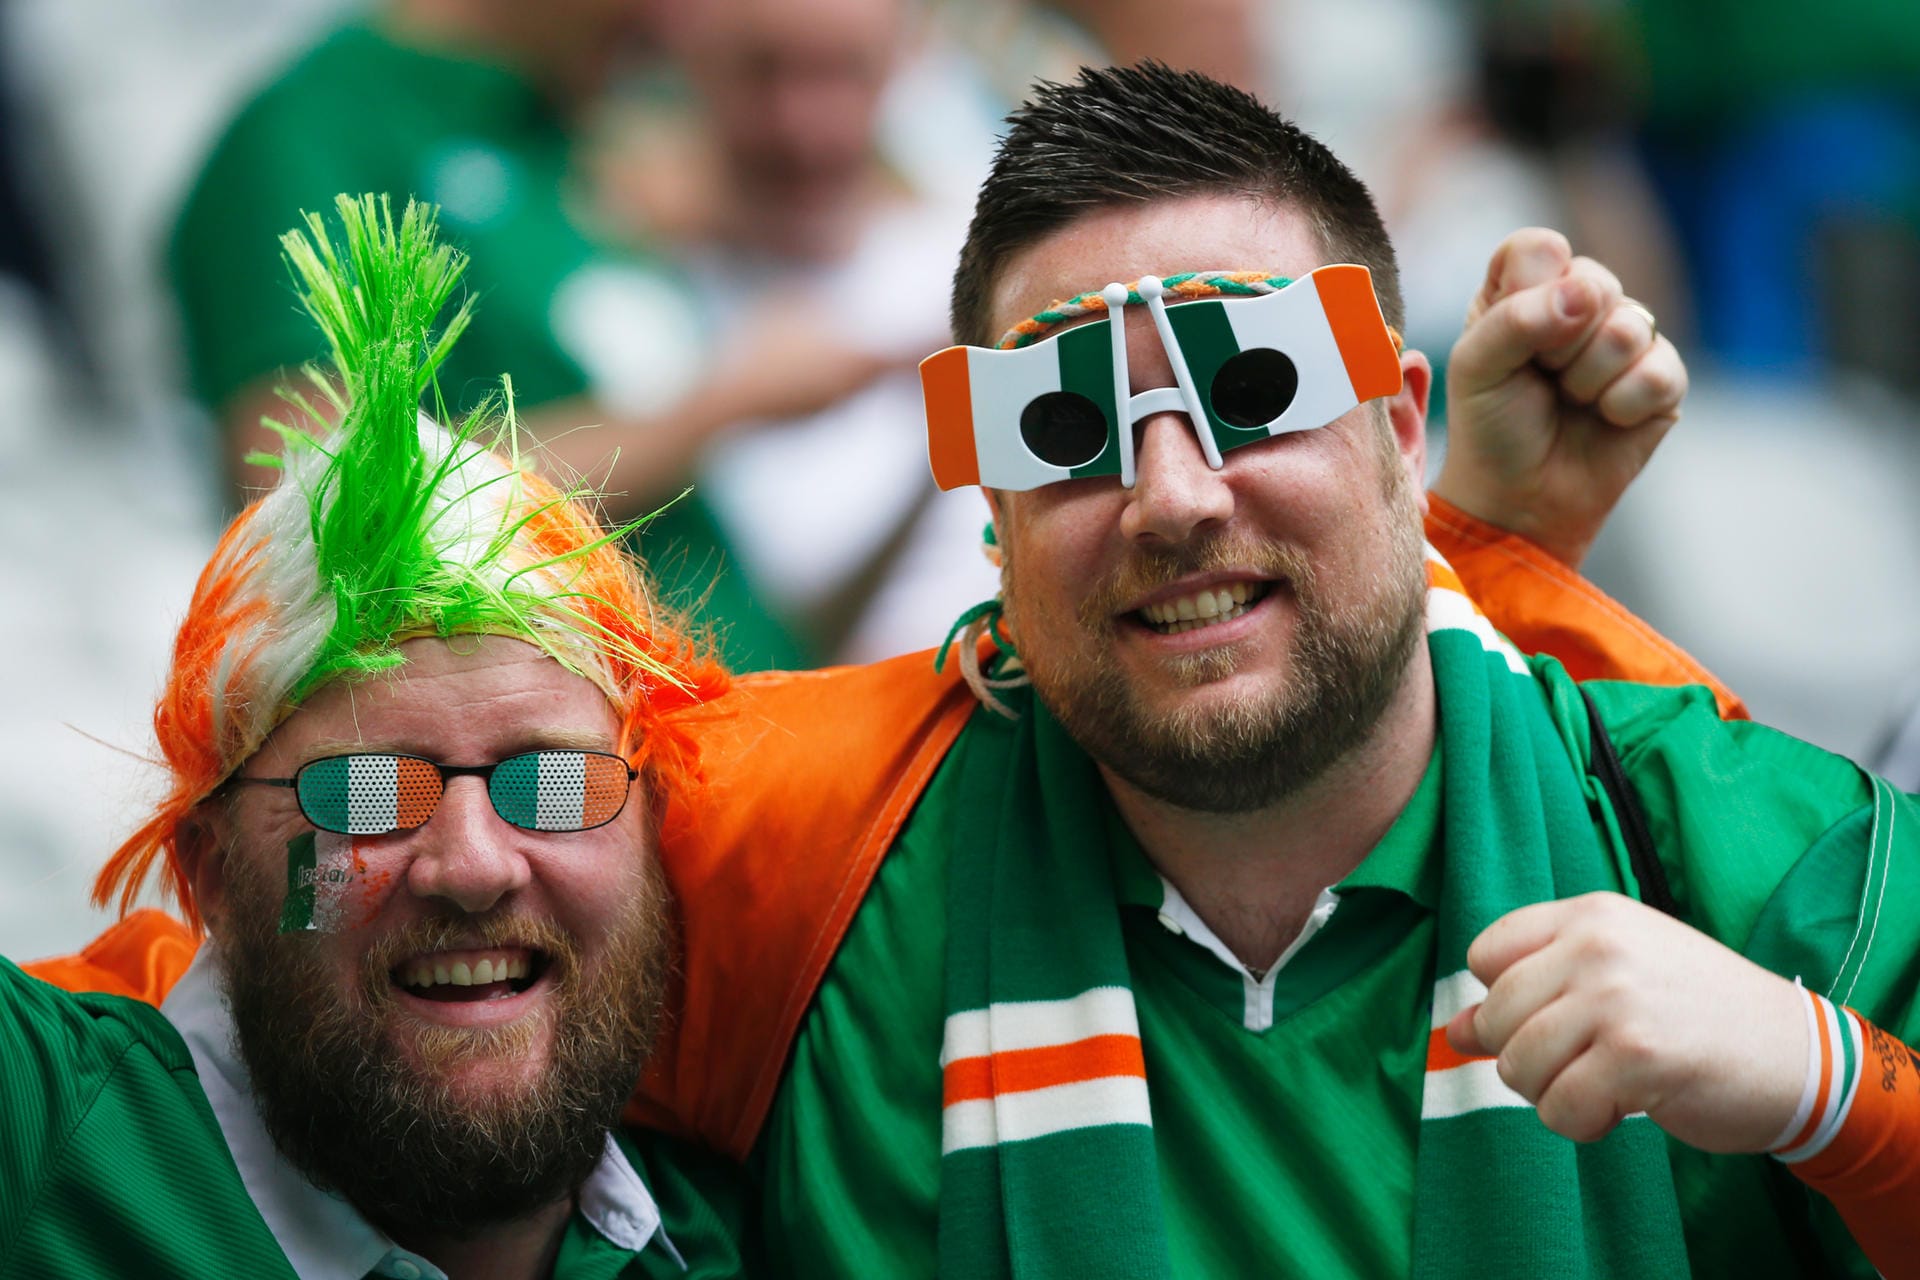 Aber die Fans der Iren stehen ihnen in nichts nach: Diese beiden Anhänger haben den "Durchblick".